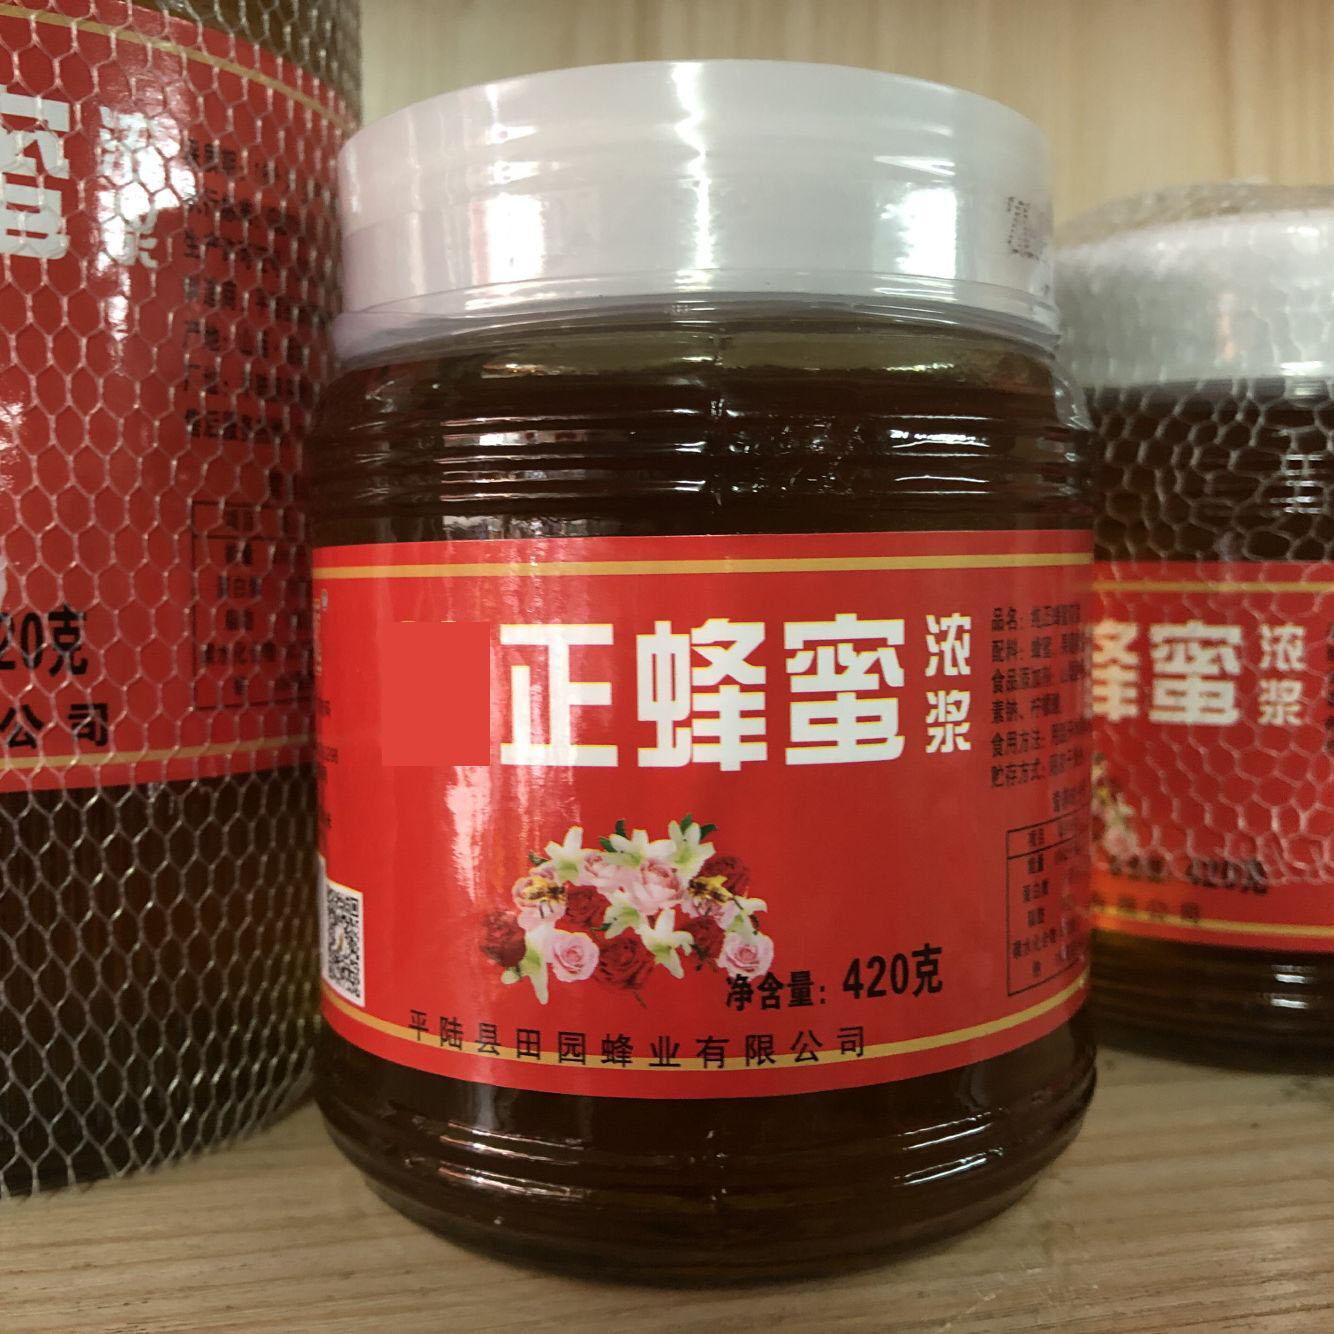 乡村蜂园纯正蜂蜜浓浆420g 包邮平陆县田园蜂业有限公司